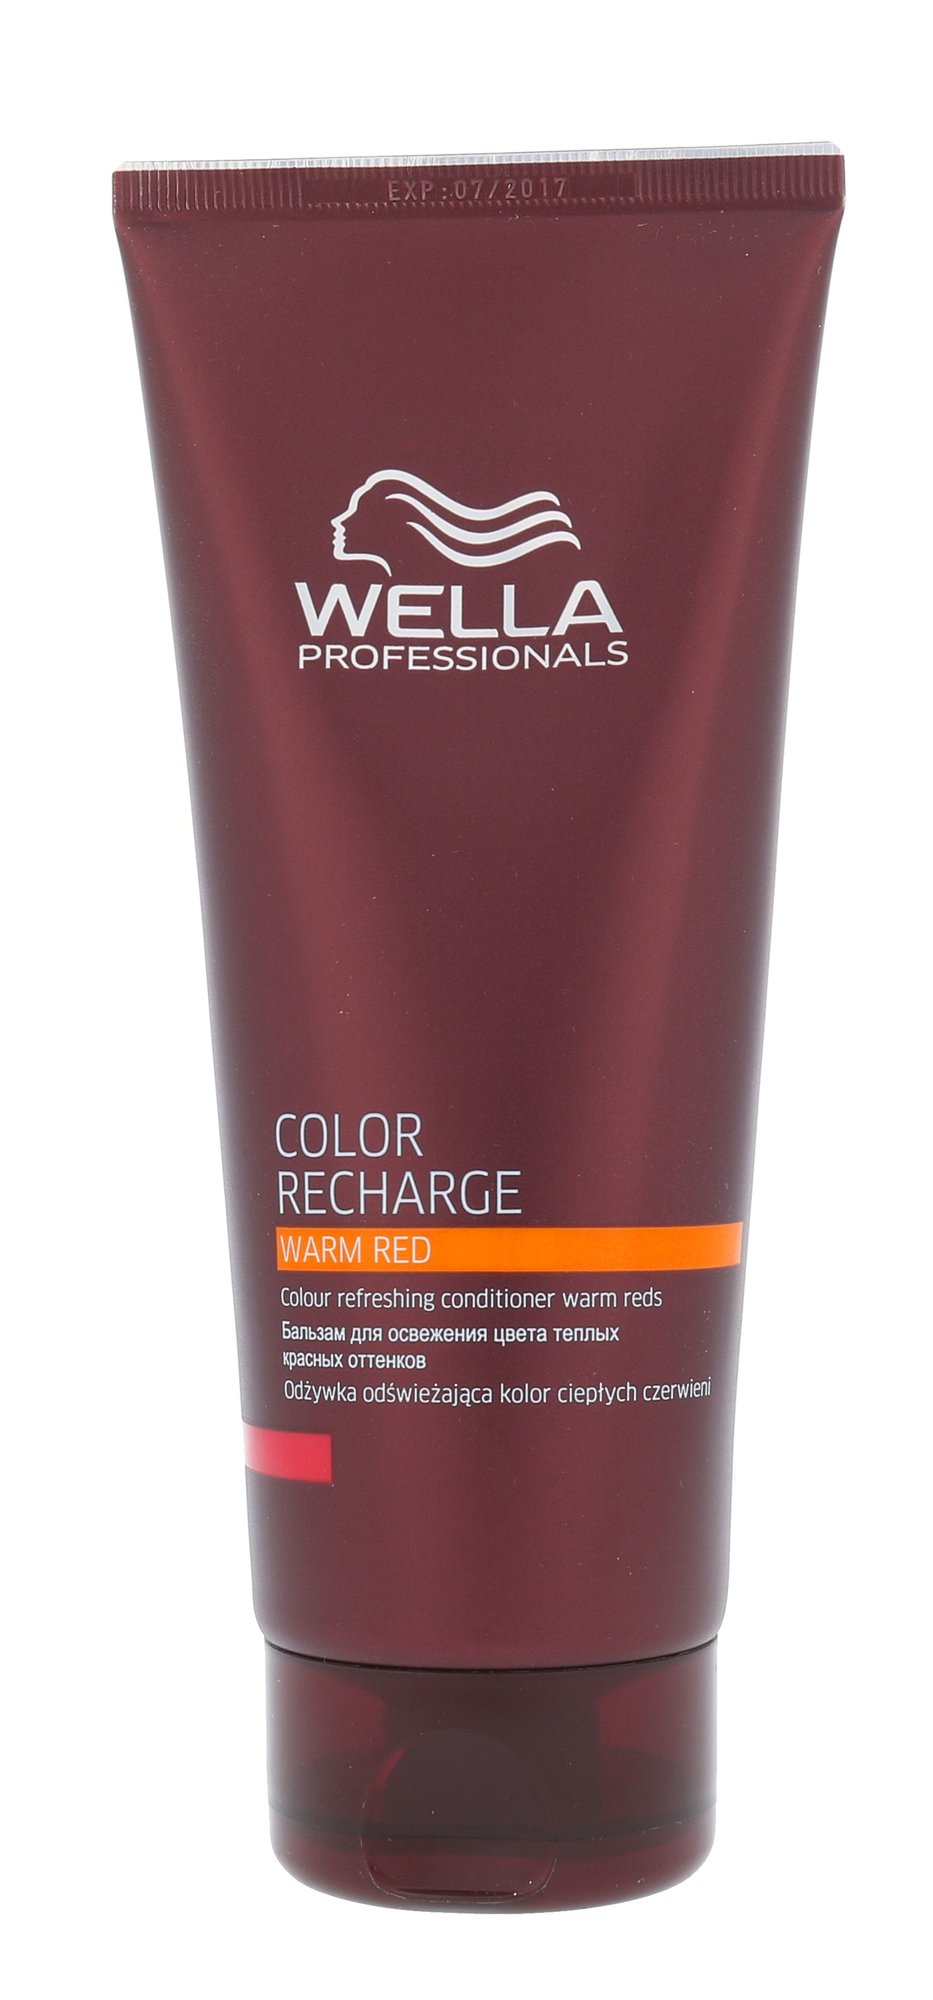 Wella Color Recharge Warm Red kondicionierius